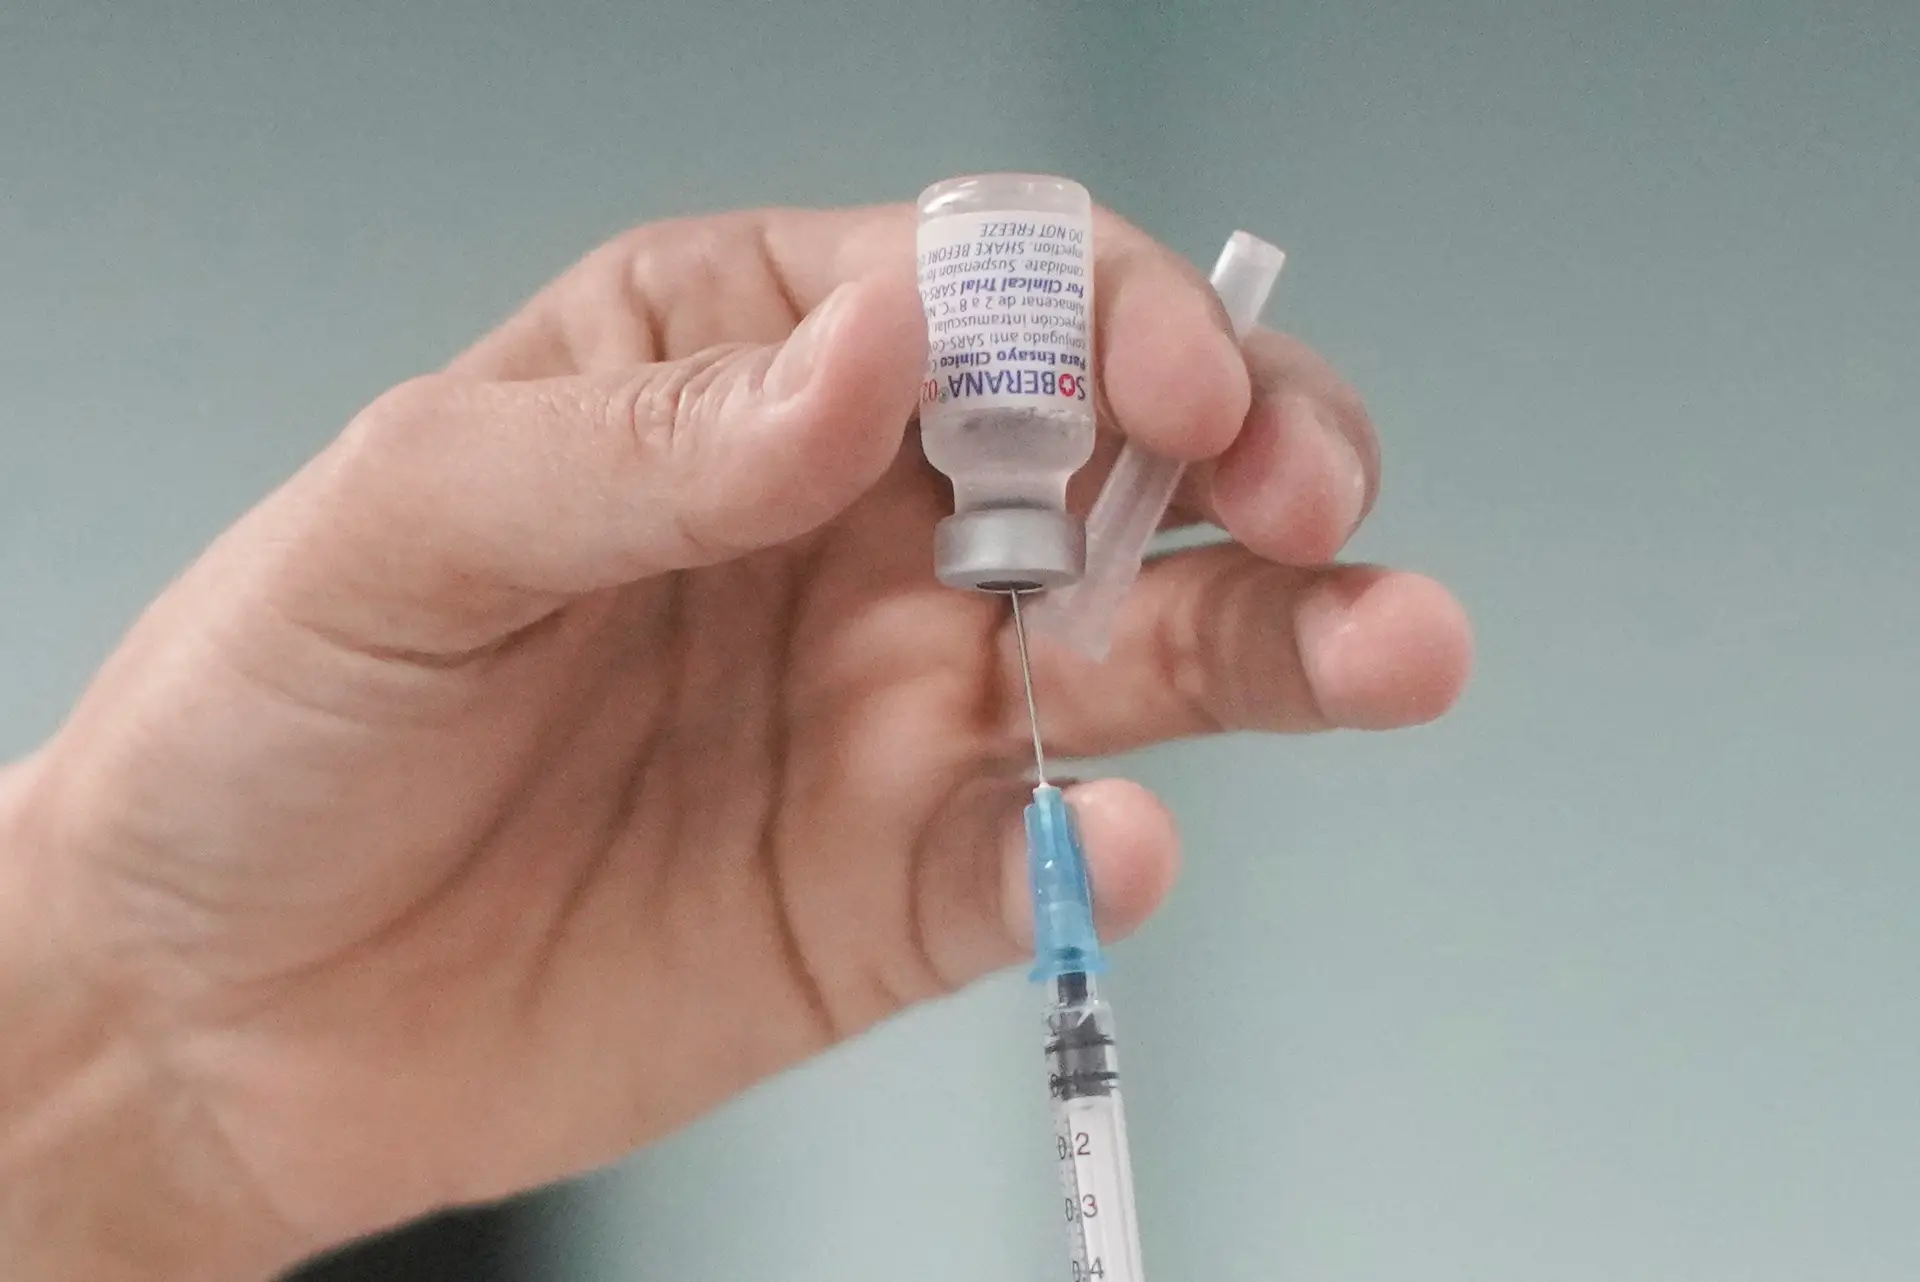 Campanha outono/inverno vai arrancar sem a garantia de nova vacina contra a covid-19, admite Durão Barroso